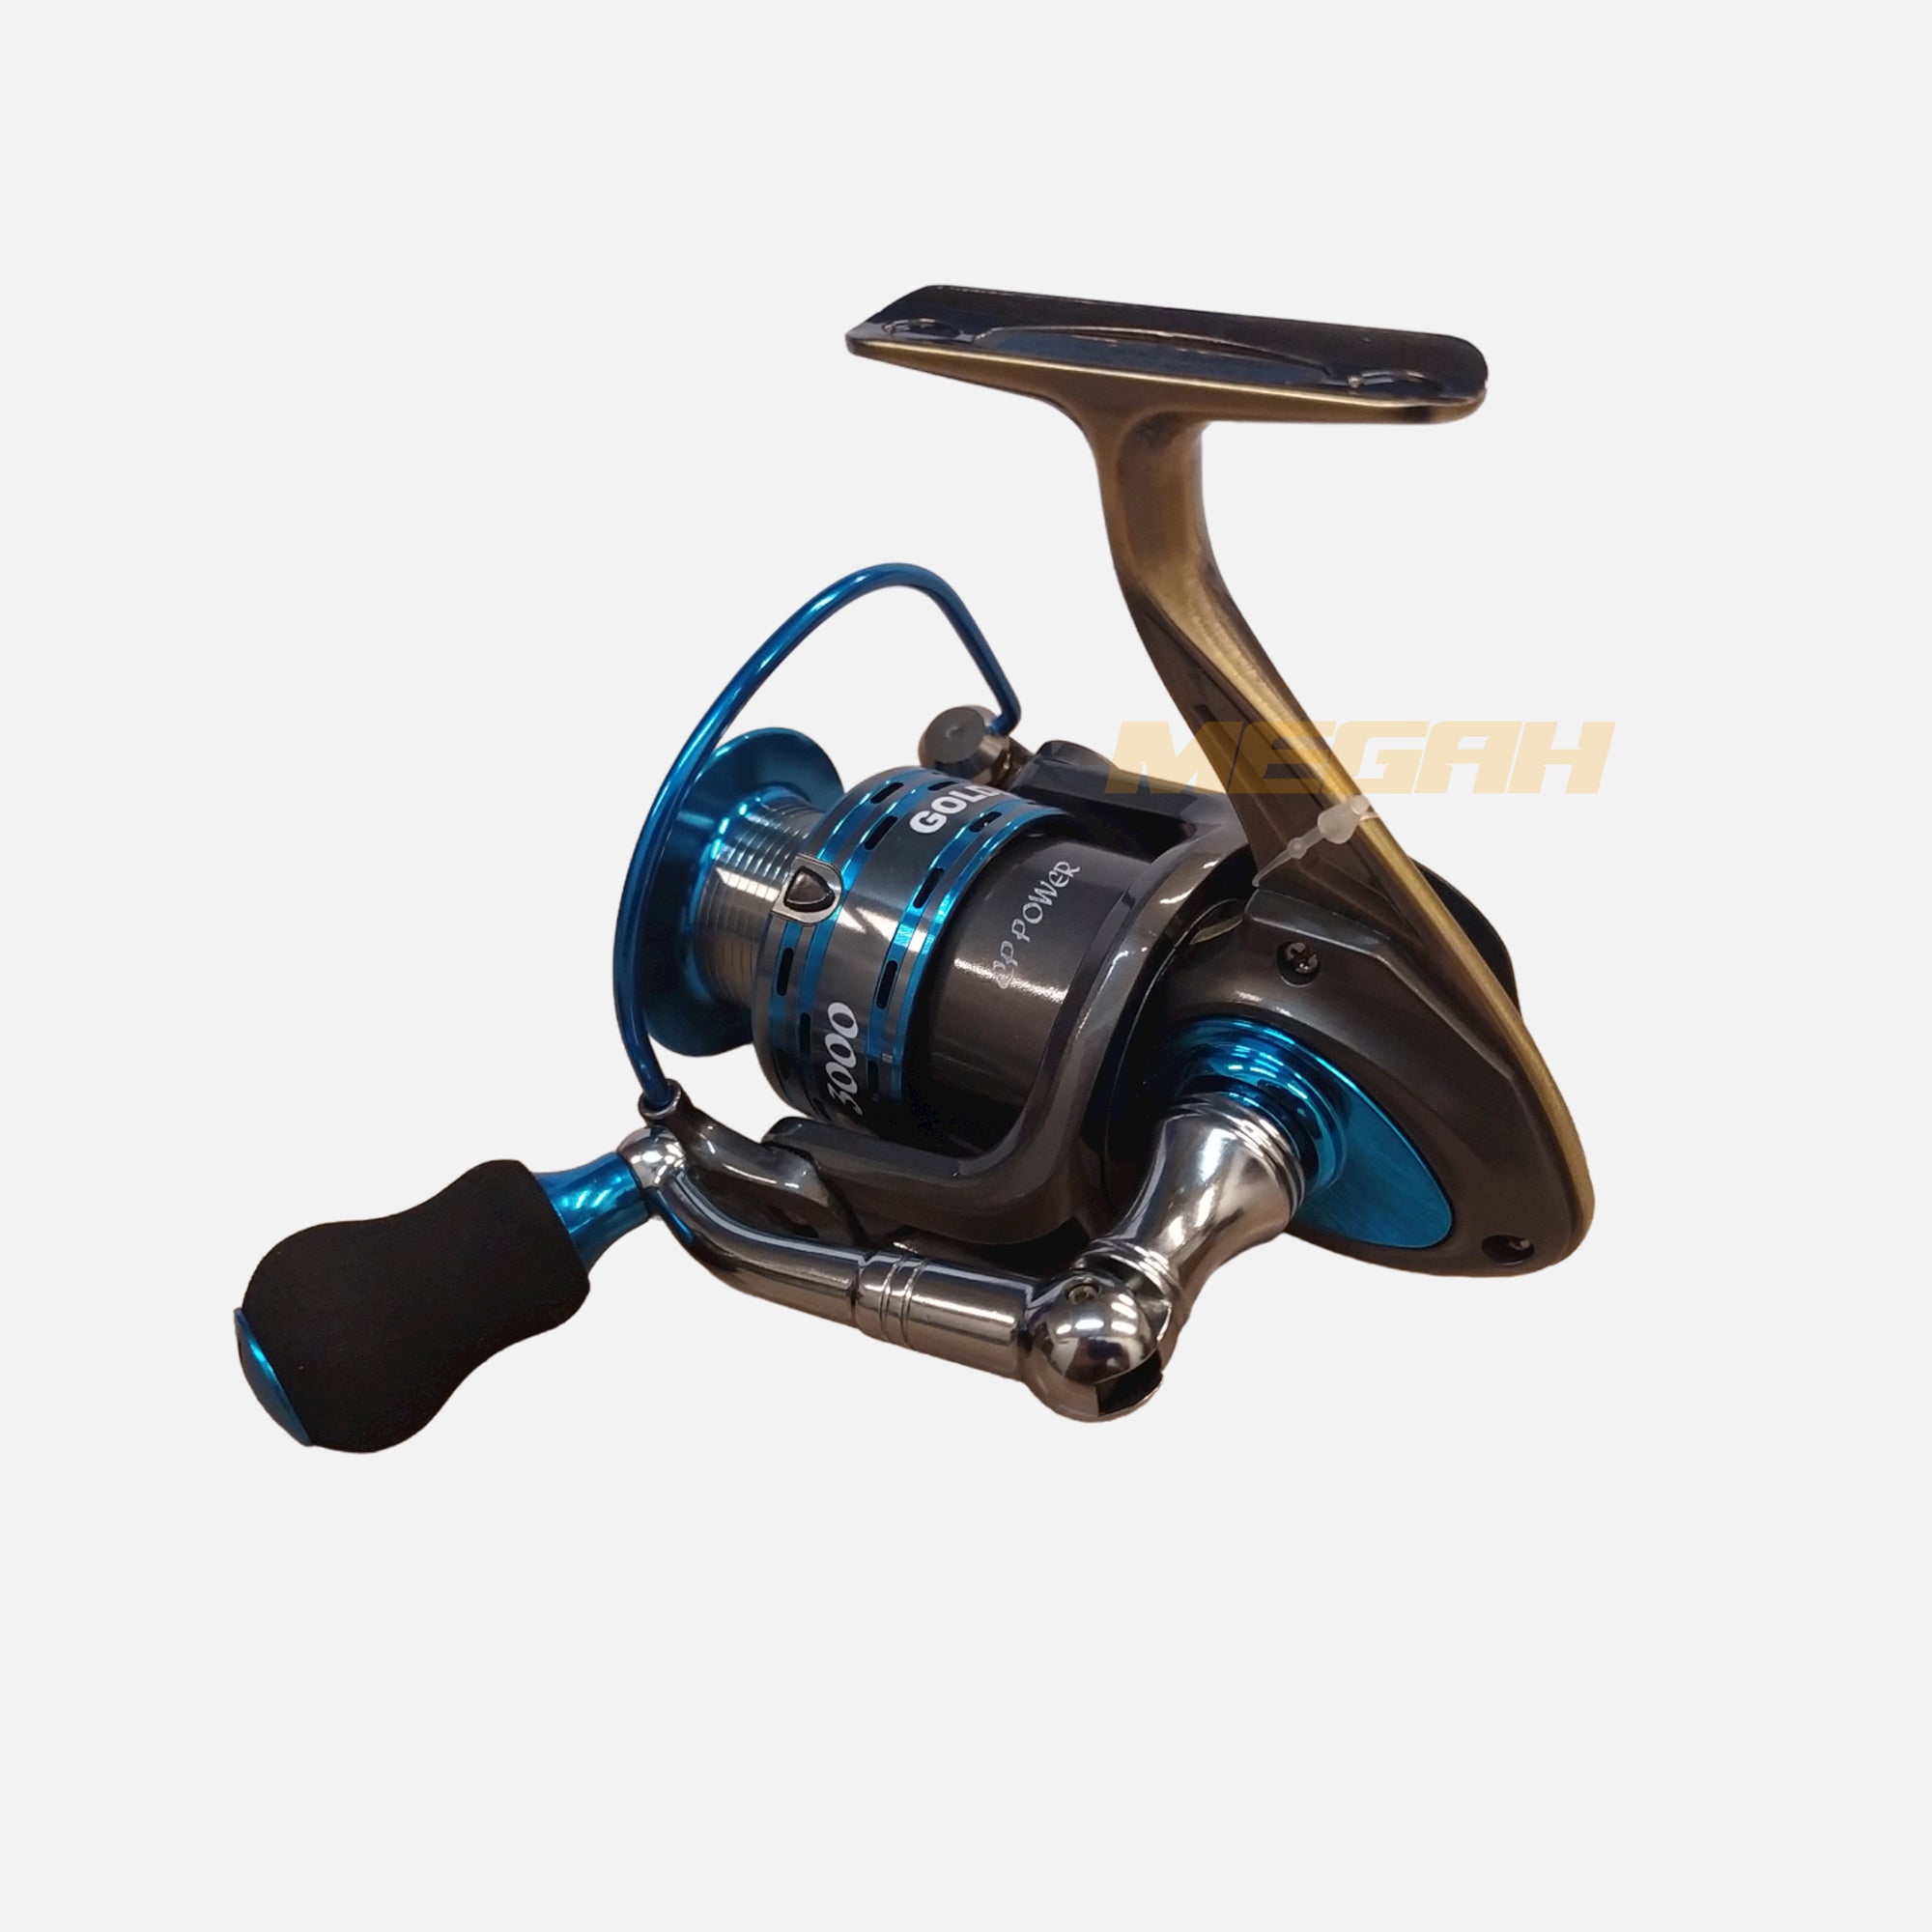 SPINNING REEL GOLDEN FISH COOPER POWER 3000 (RL355)